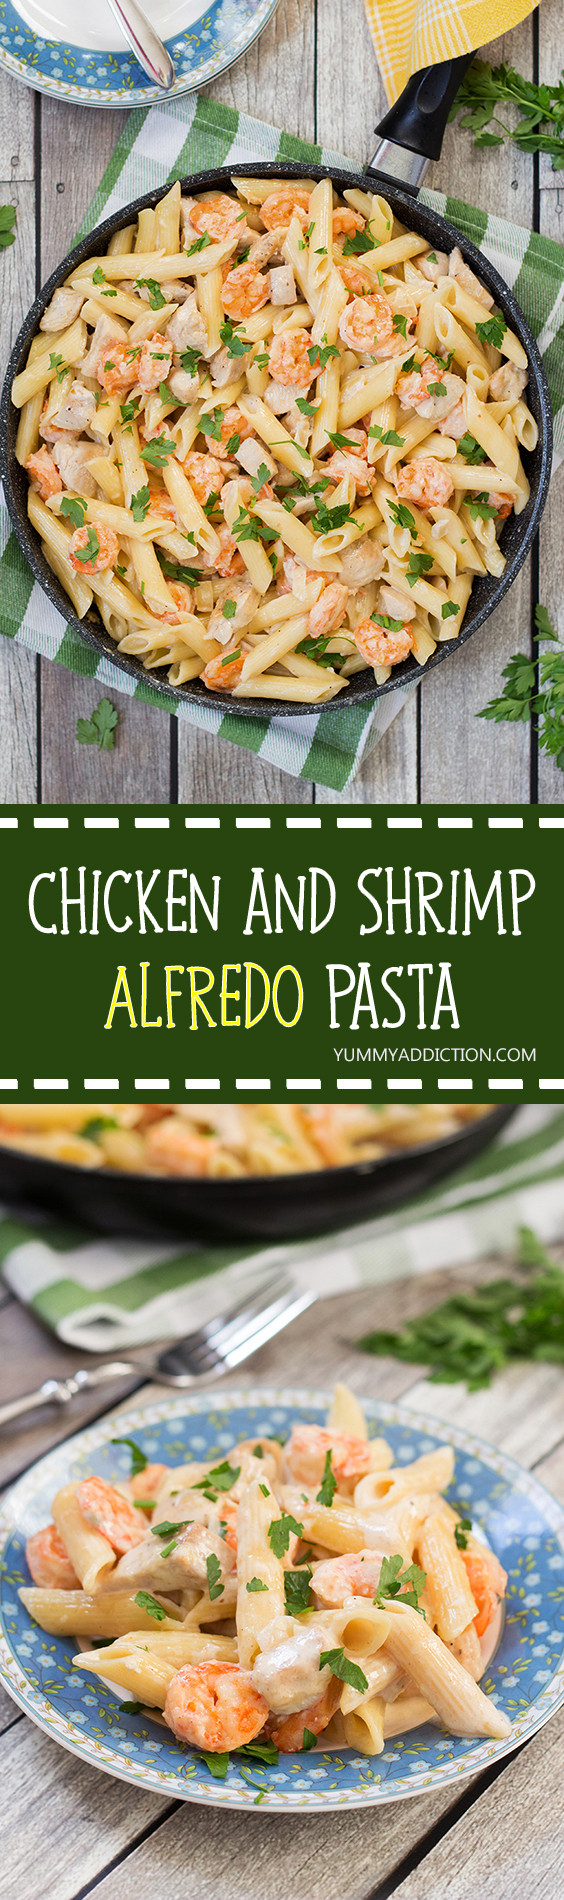 Chicken And Shrimp Alfredo Pasta Recipe
 The Best Chicken and Shrimp Alfredo Pasta Recipe